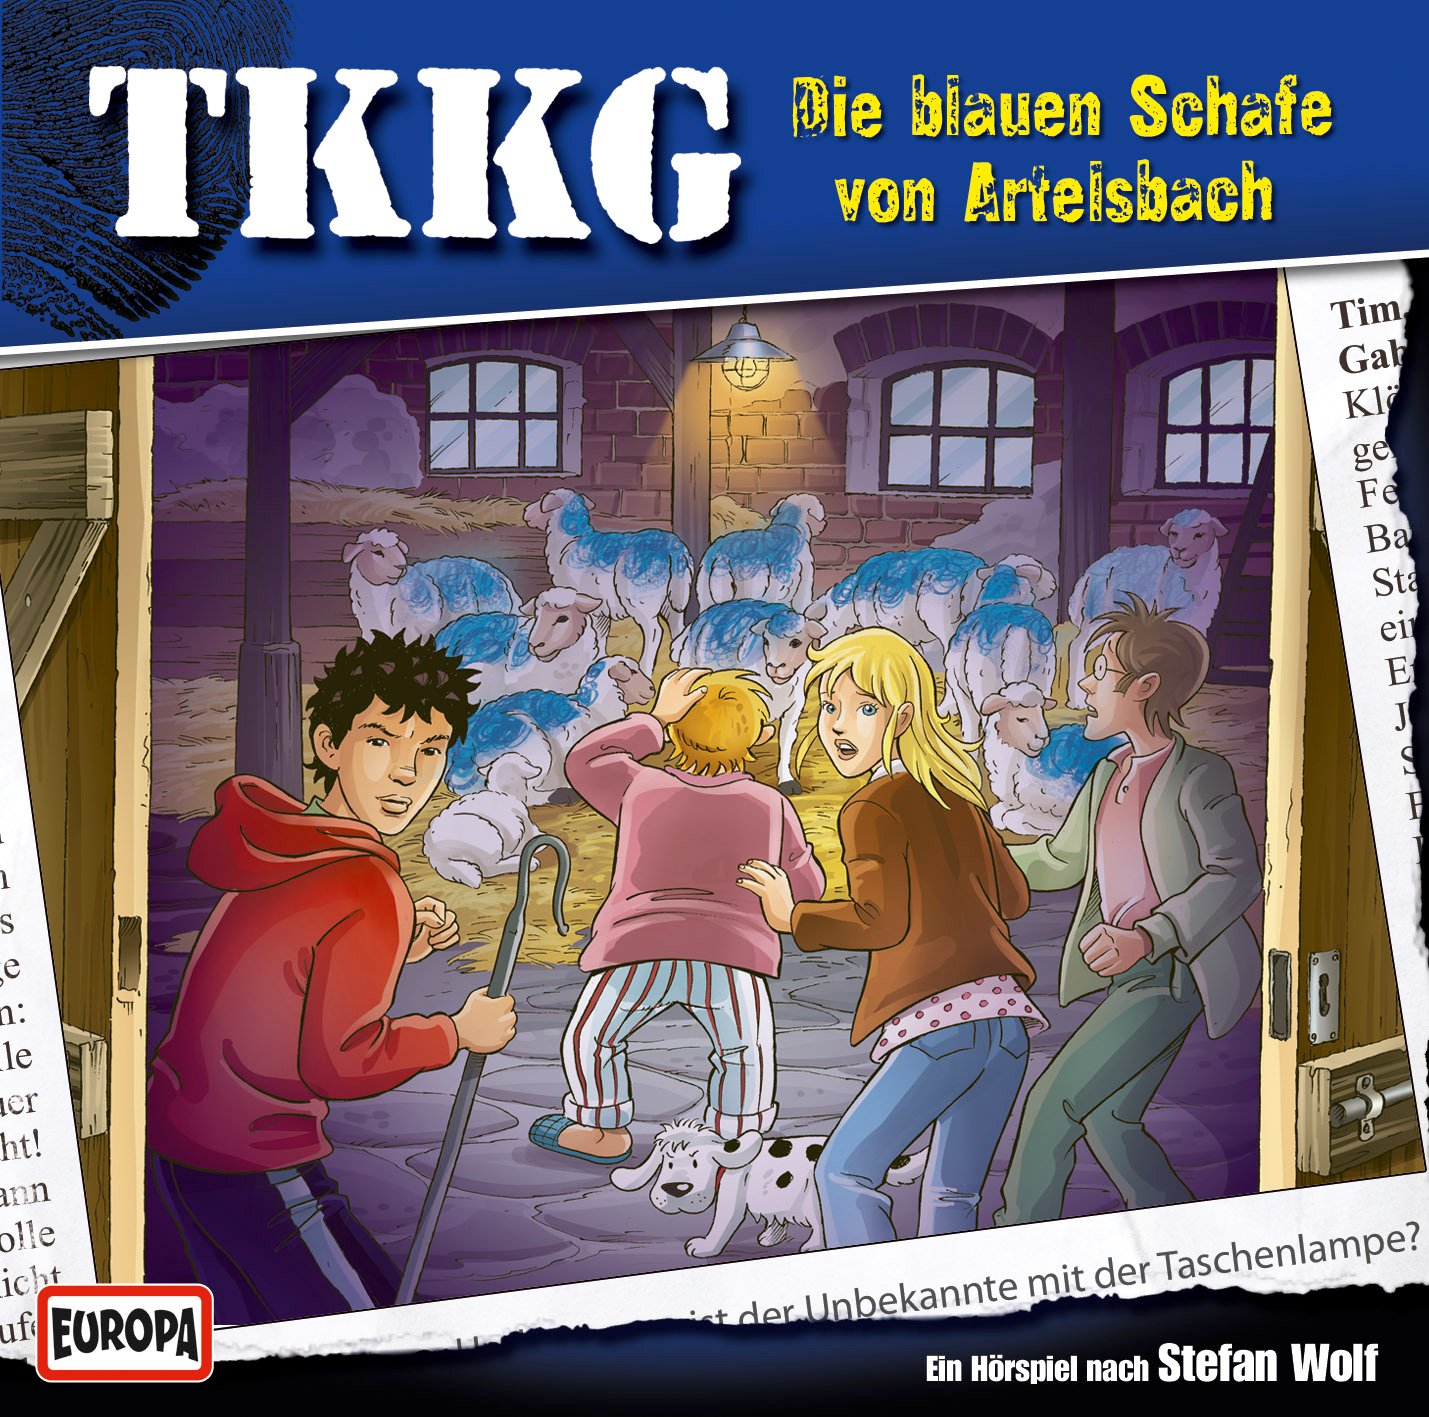 TKKG Hörspiel-Folge 188: Die blauen Schafe von Artelsbach